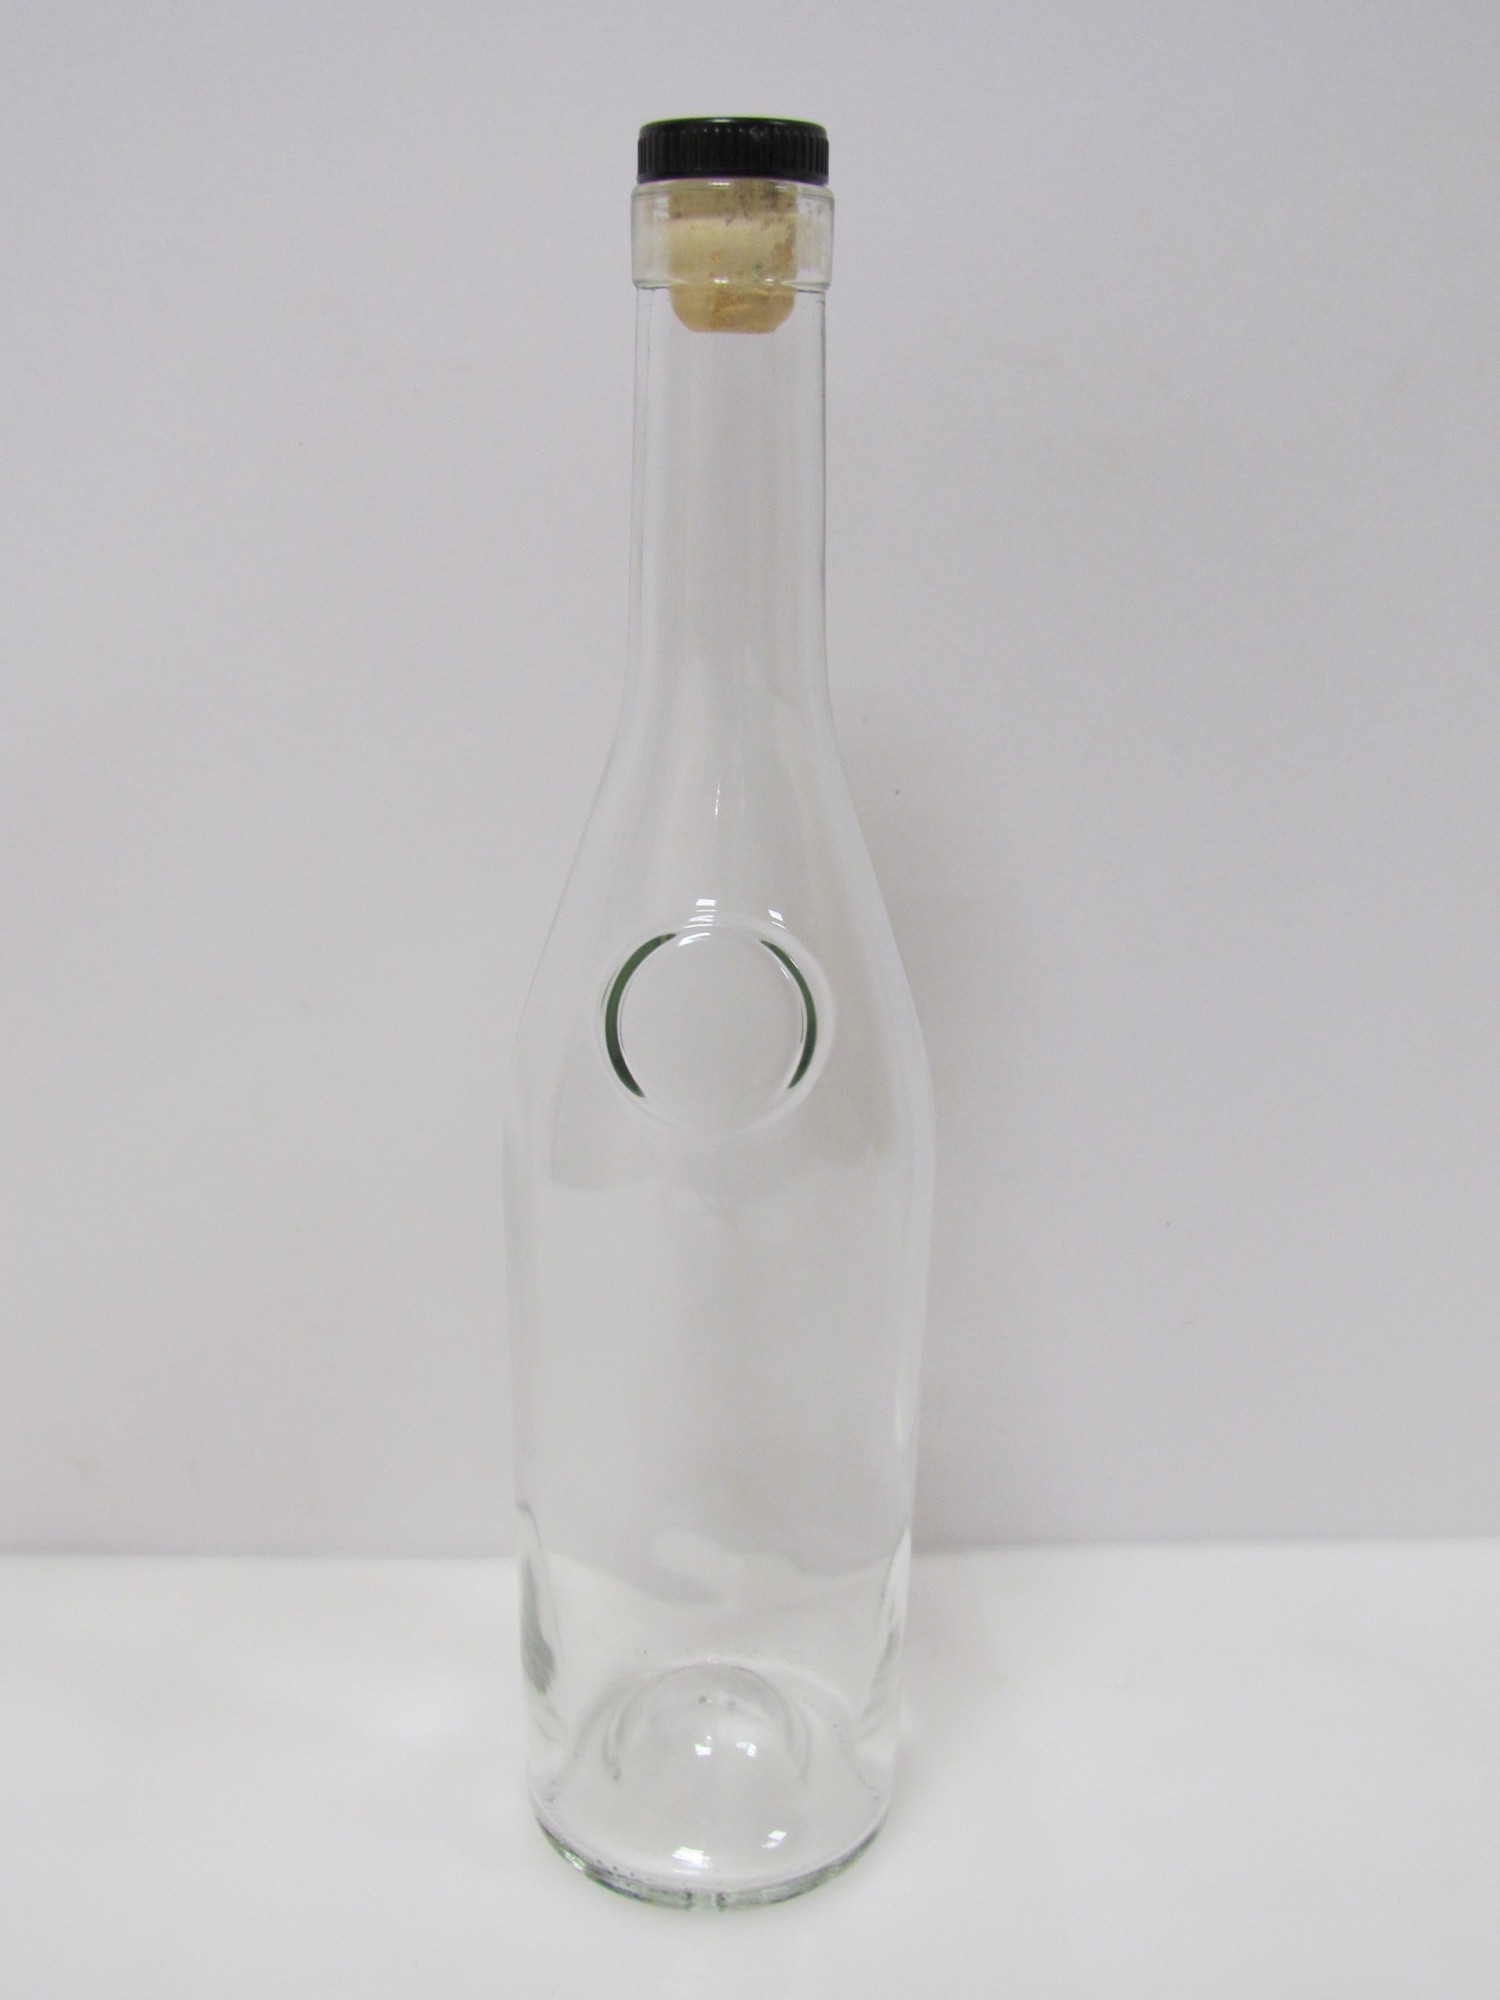 Купить бутылку 0.5 с пробкой. Бутылка Палома 0.5л с пробкой. Бутылка Наполеон, 0,5 л. Бутылка коньячная 0.5. Бутылка 0.5 л Орион с пробкой.